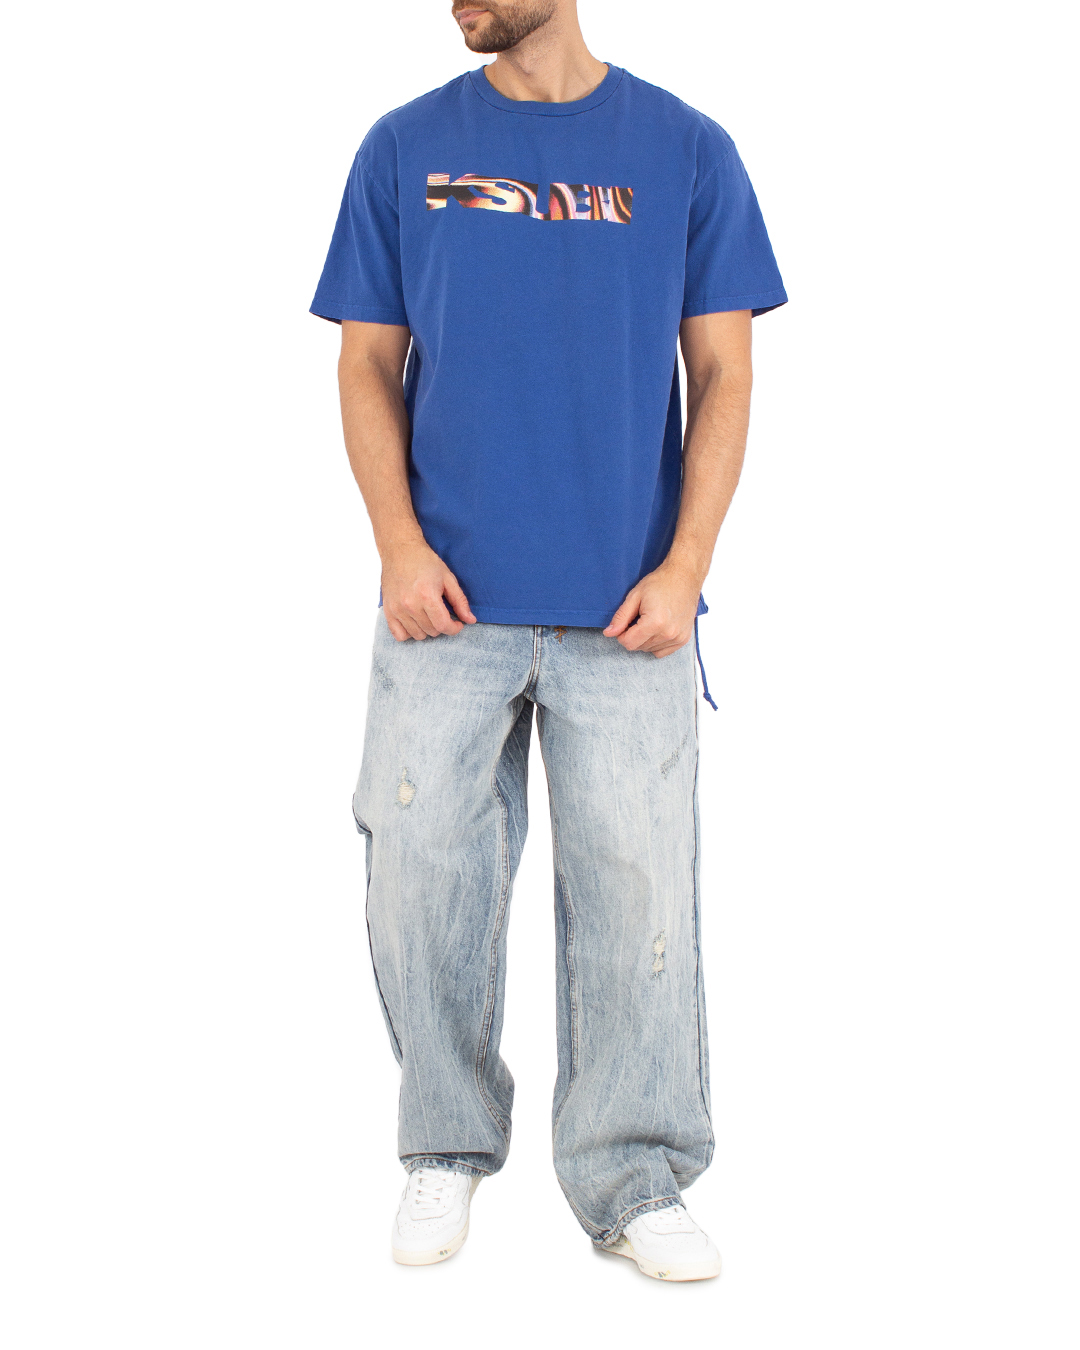 джинсы KSUBI MSP24DJ050 синий 36, размер 36 - фото 2